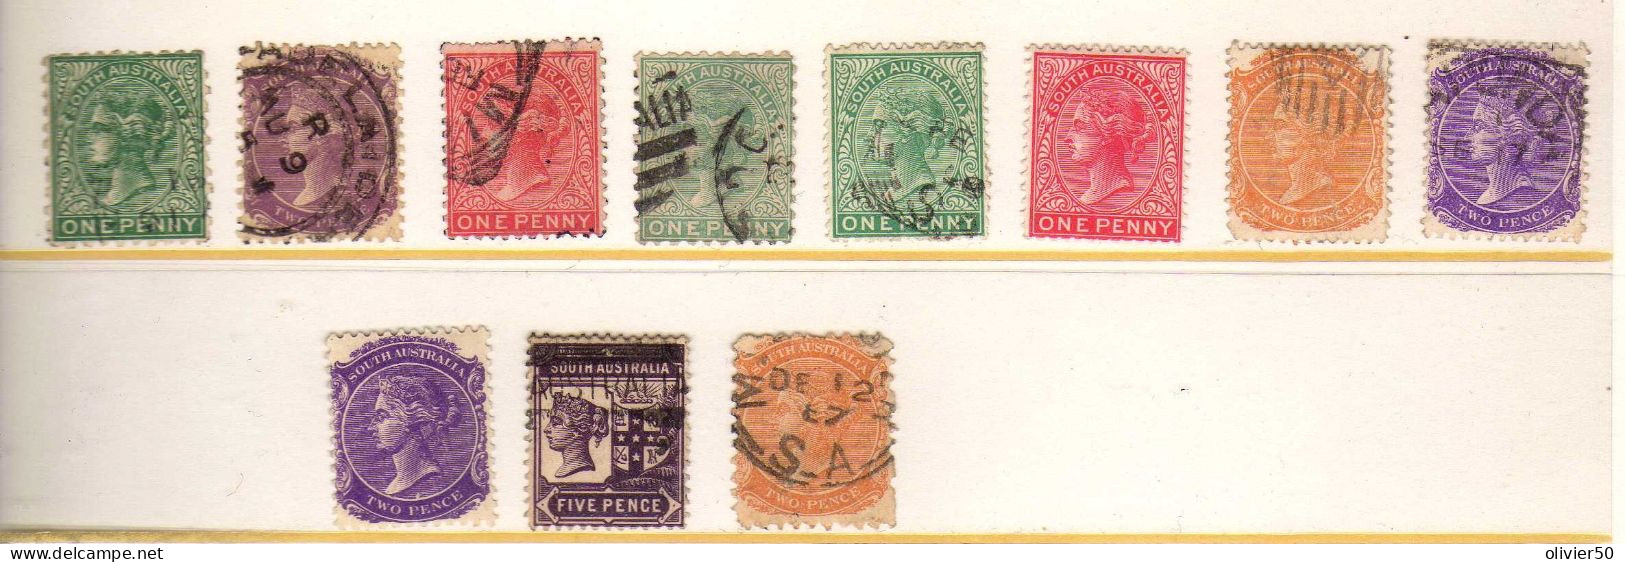 Australie Du Sud - Victoria - Obliteres - Used Stamps